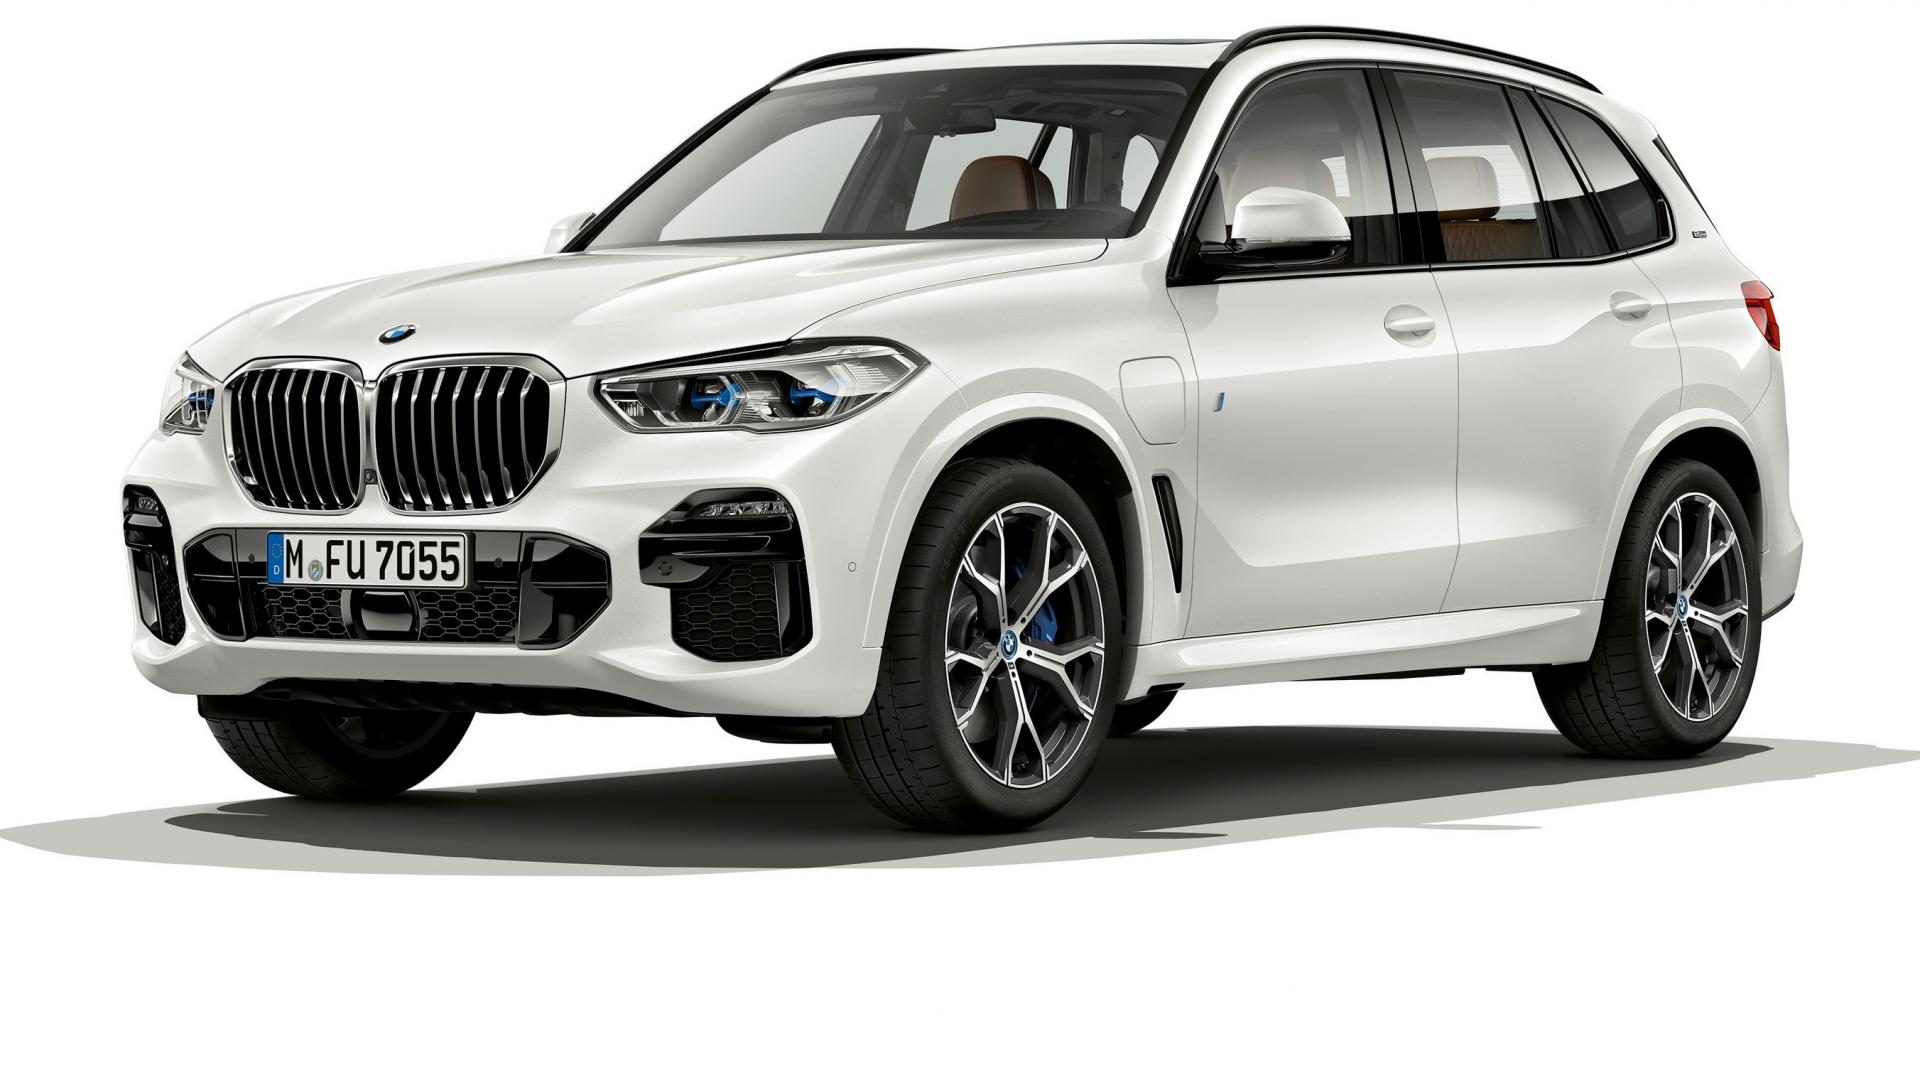 Annunciata la nuova BMW X5 Ibrida